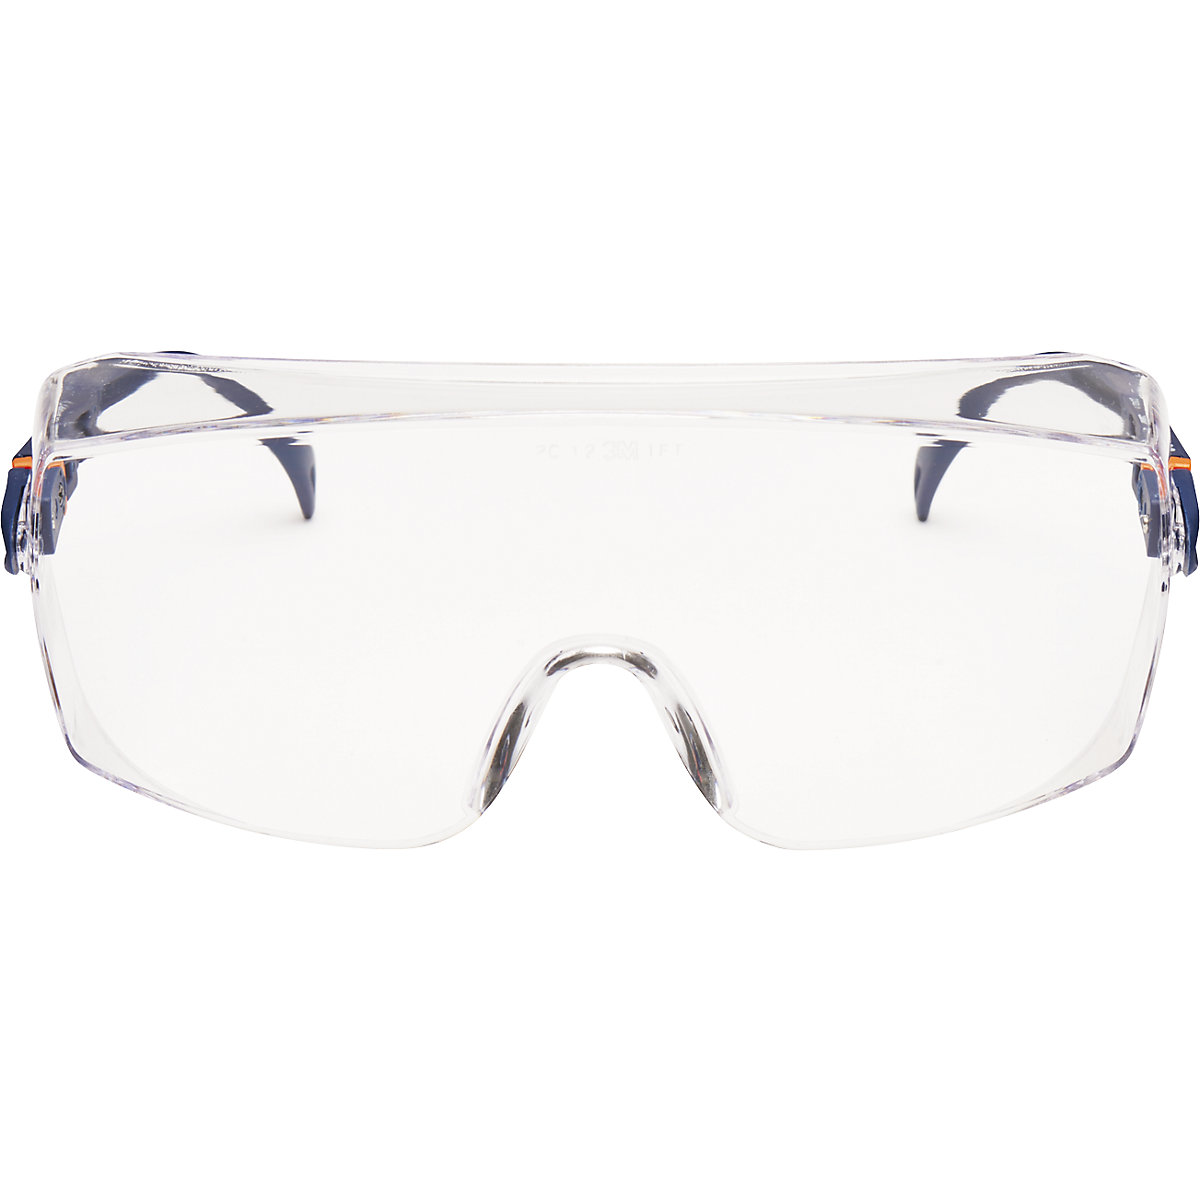 Látásjavító szemüveg felett hordható védőszemüveg, 2800 – 3M (Termék képe 2)-1